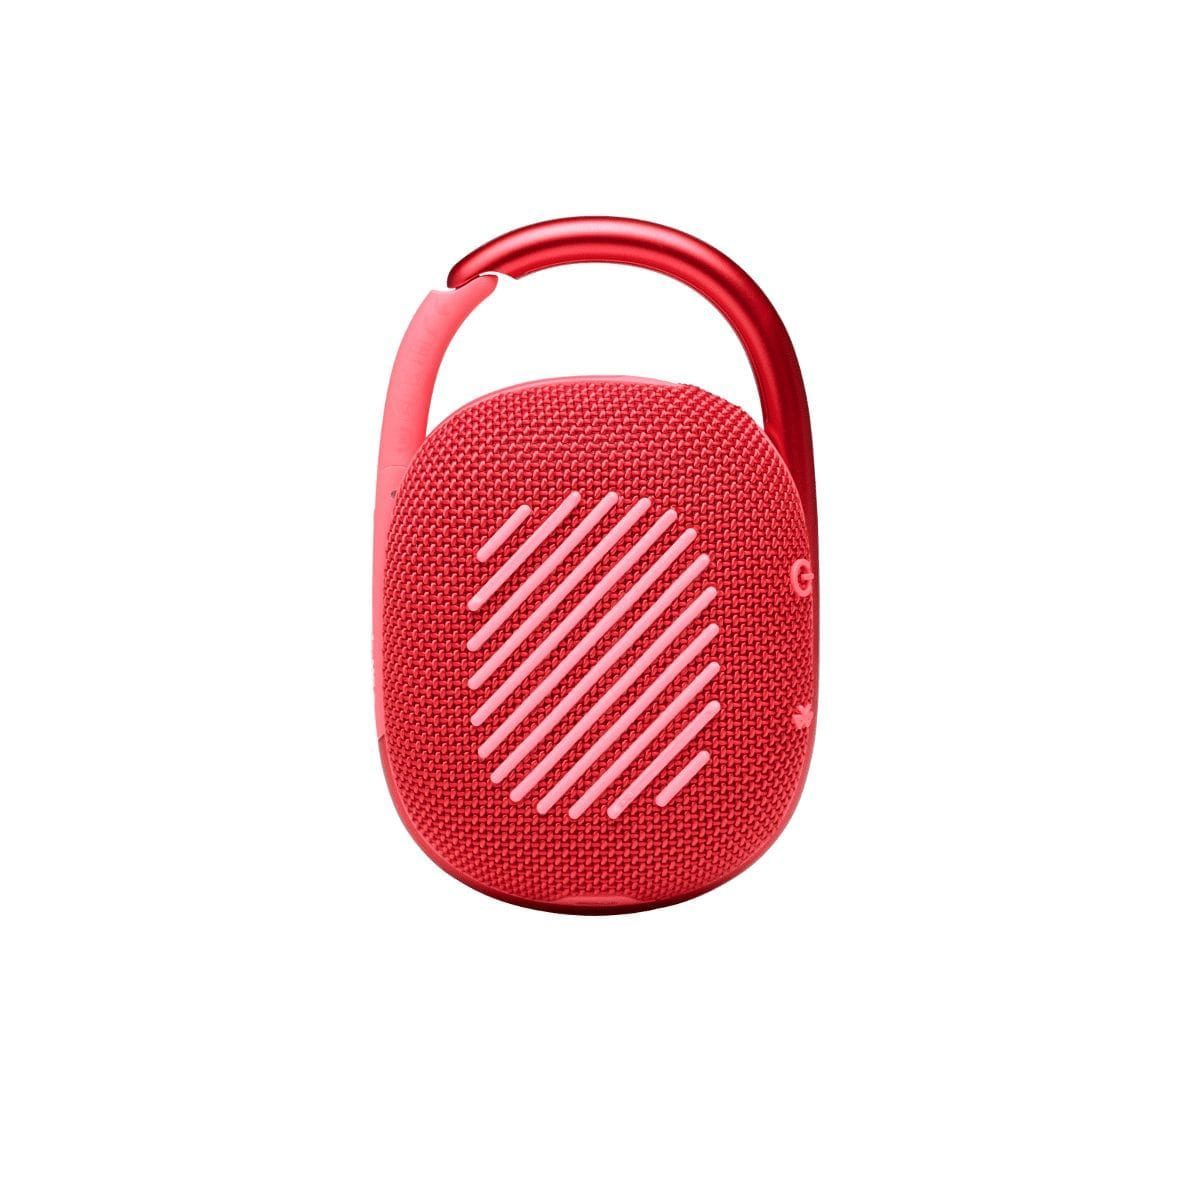 JBL Clip 4 RED портативная Bluetooth колонка Портативные акустические системы